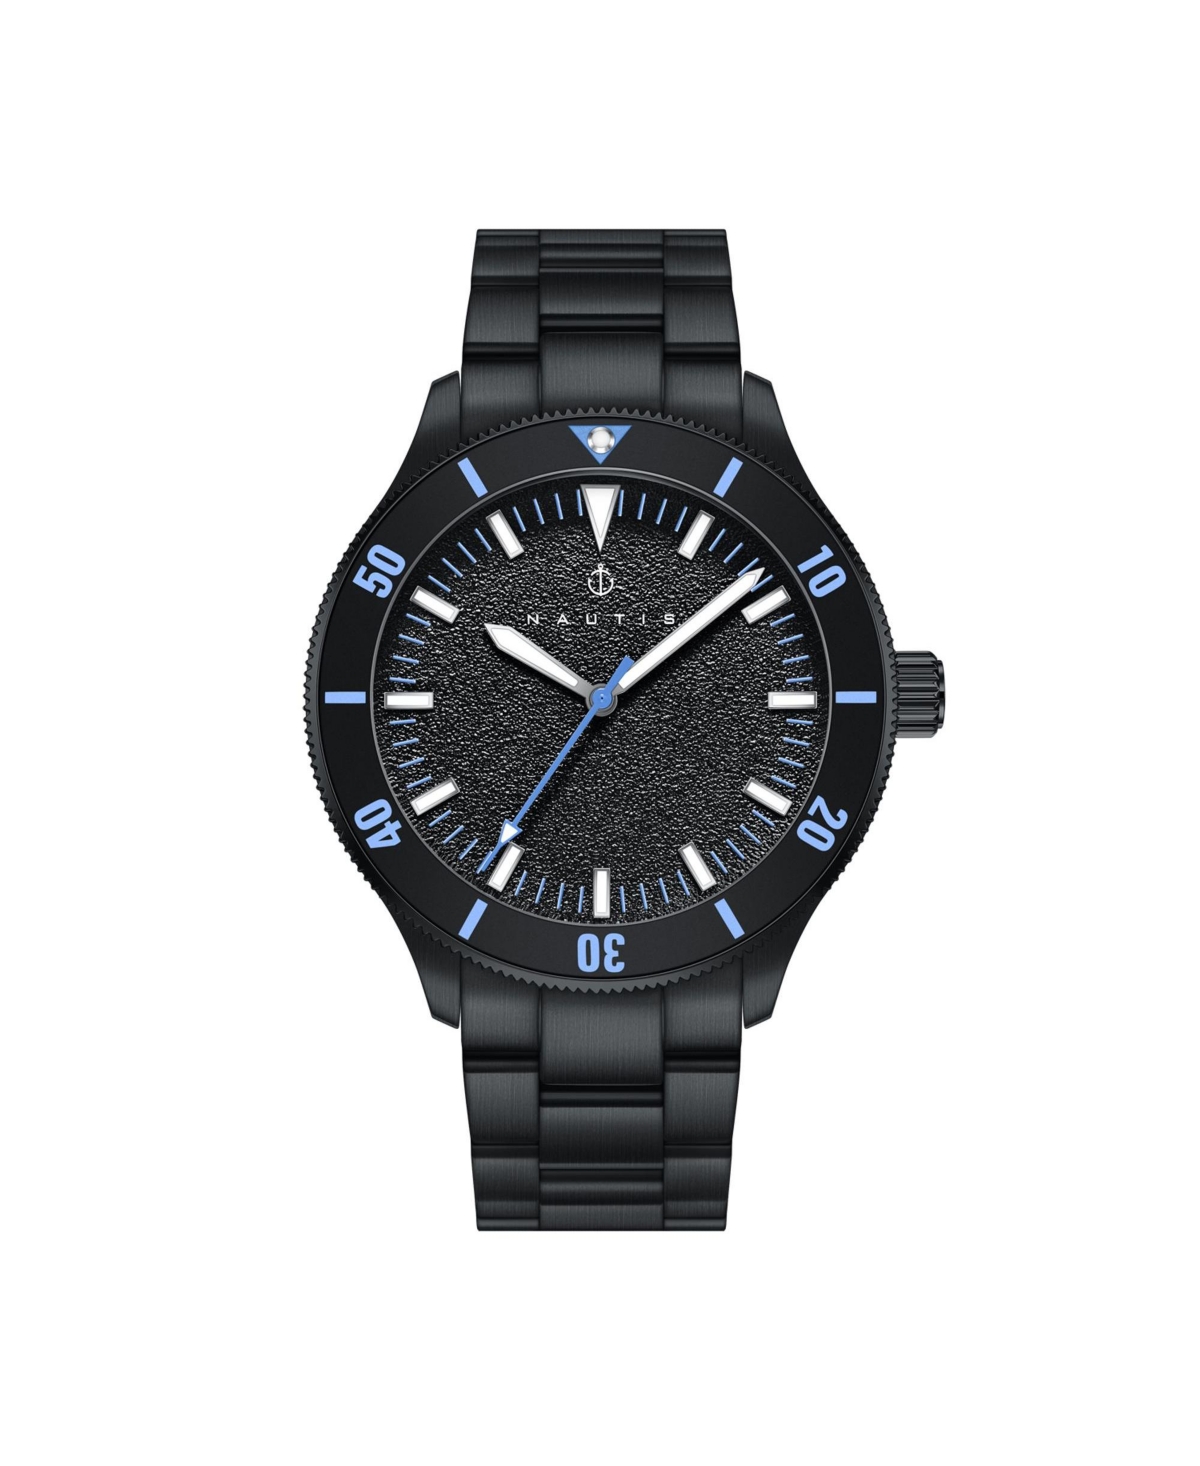 Men Deacon Stainless Steel Watch - Black/Blue, 43mm - Black/blue